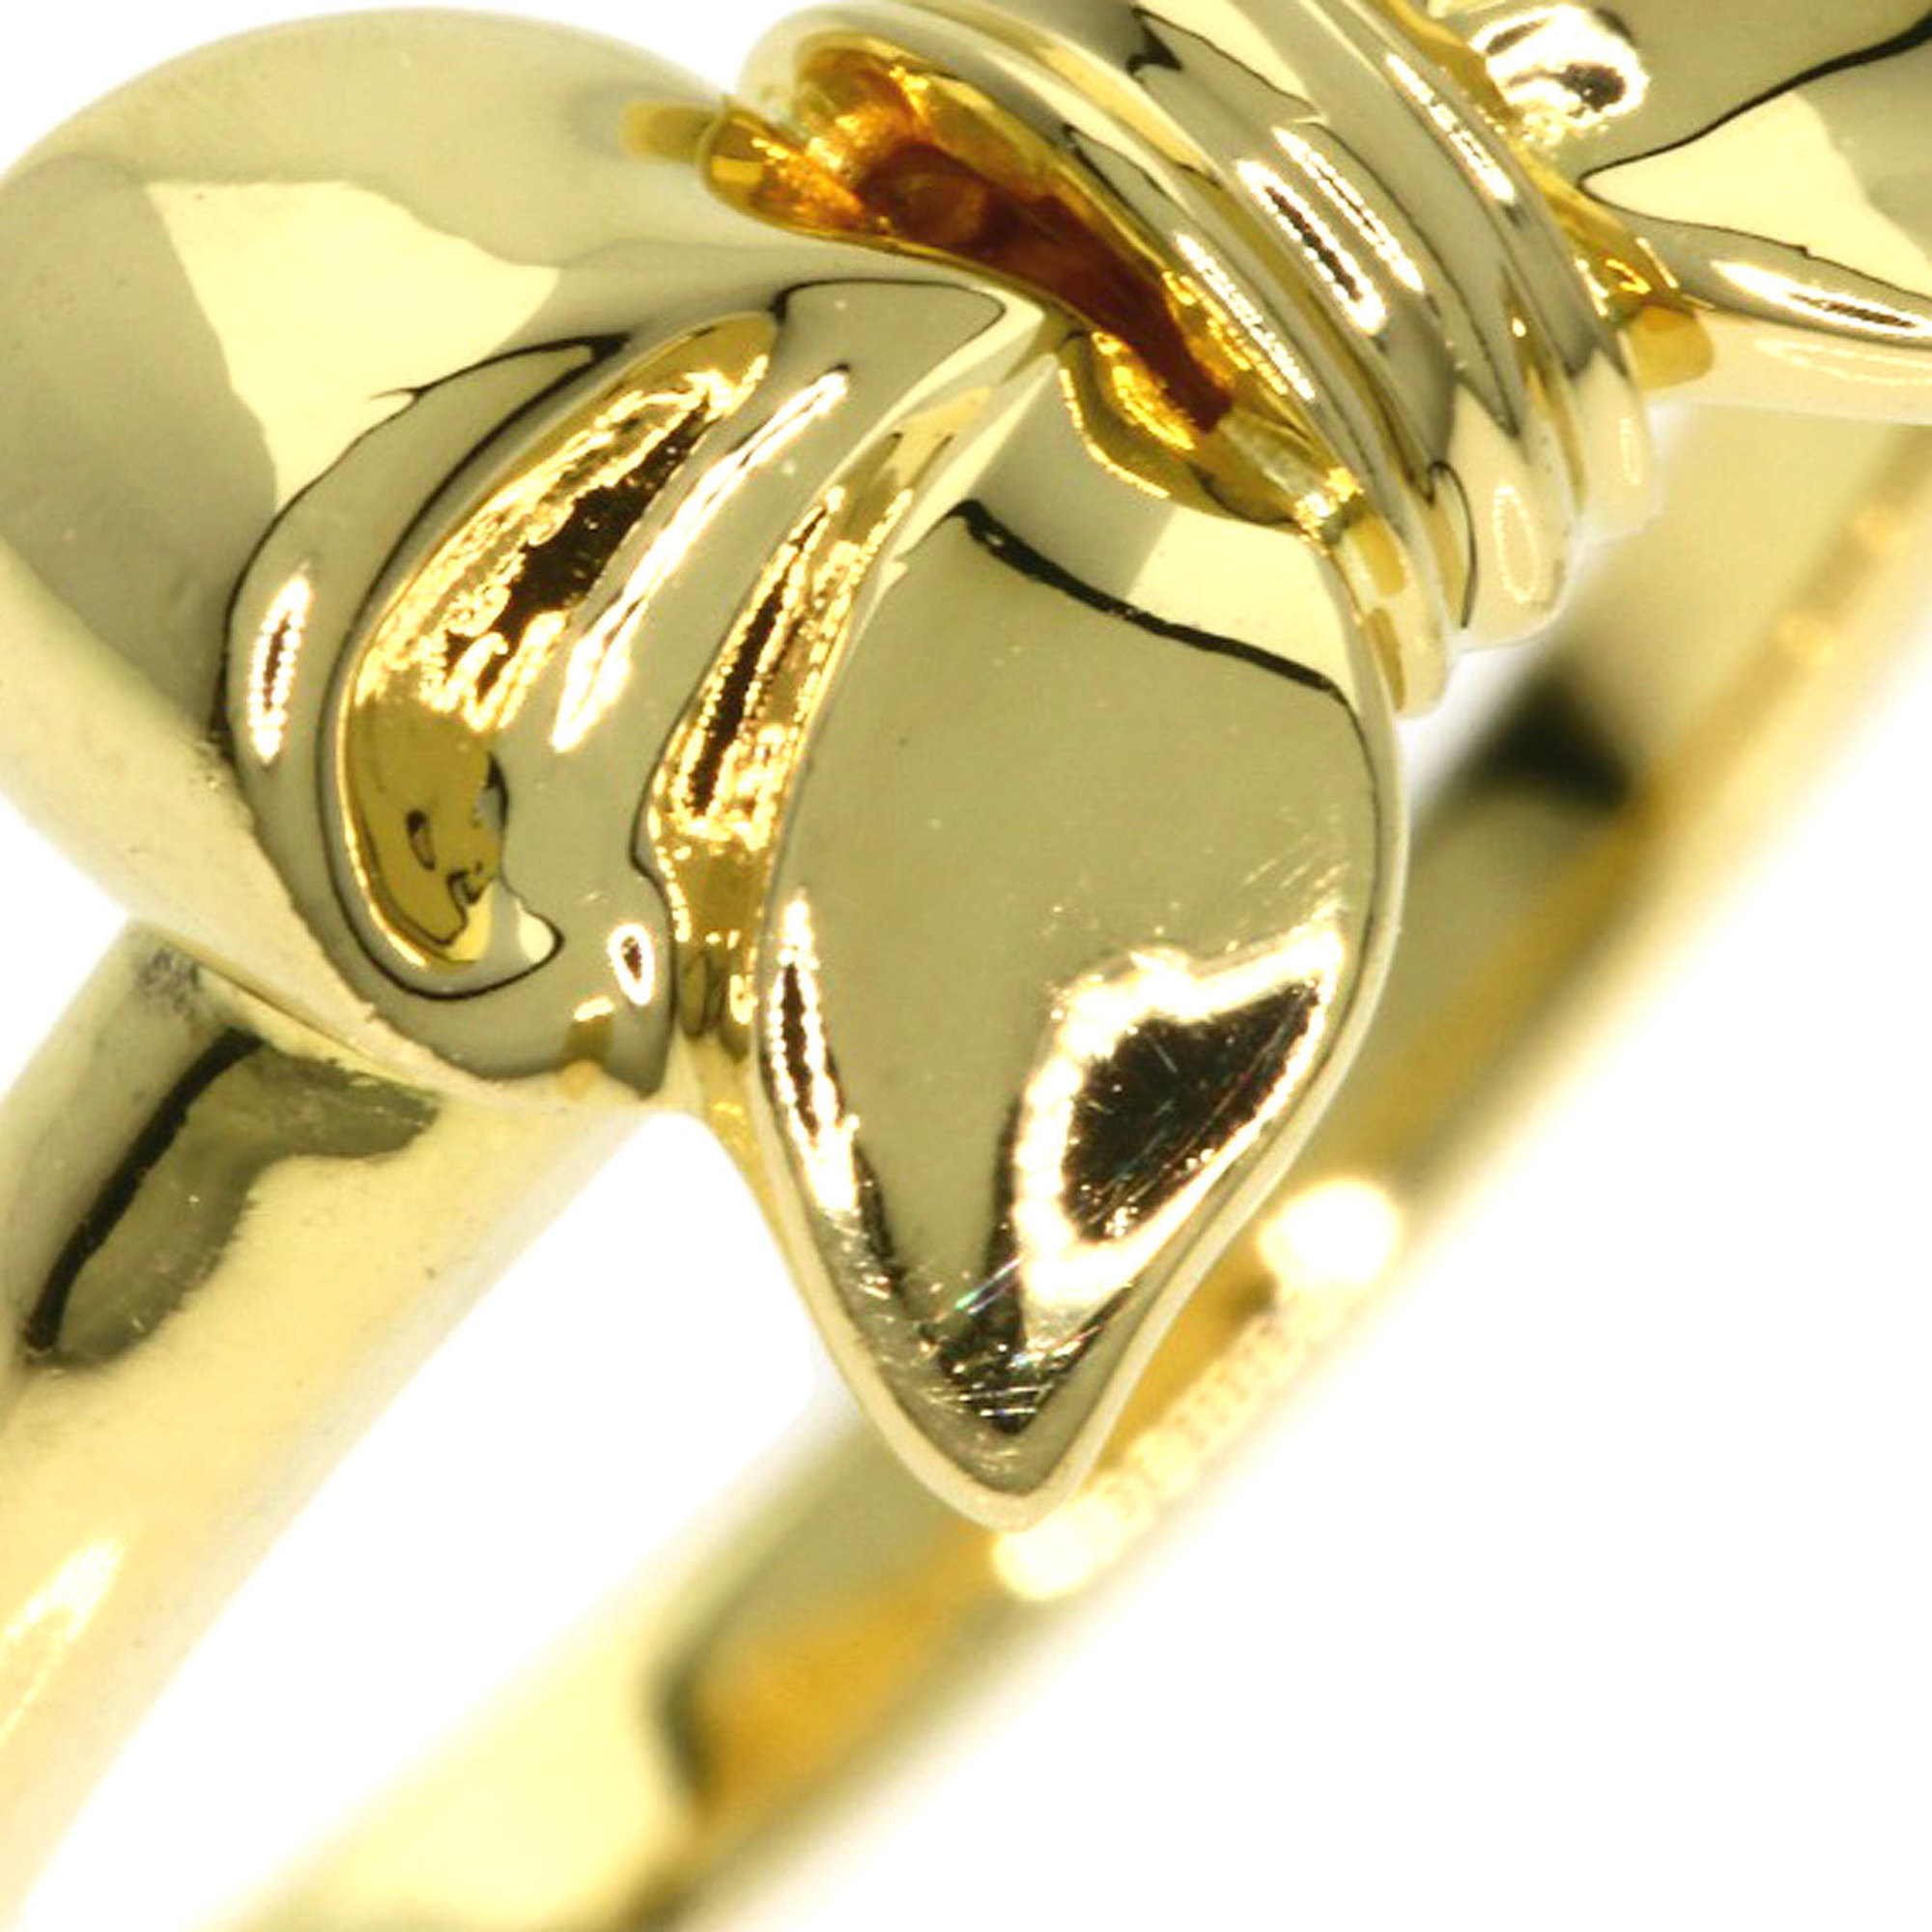 Tiffany & Co. Bow Ring, 18K Yellow Gold, Women's, TIFFANY